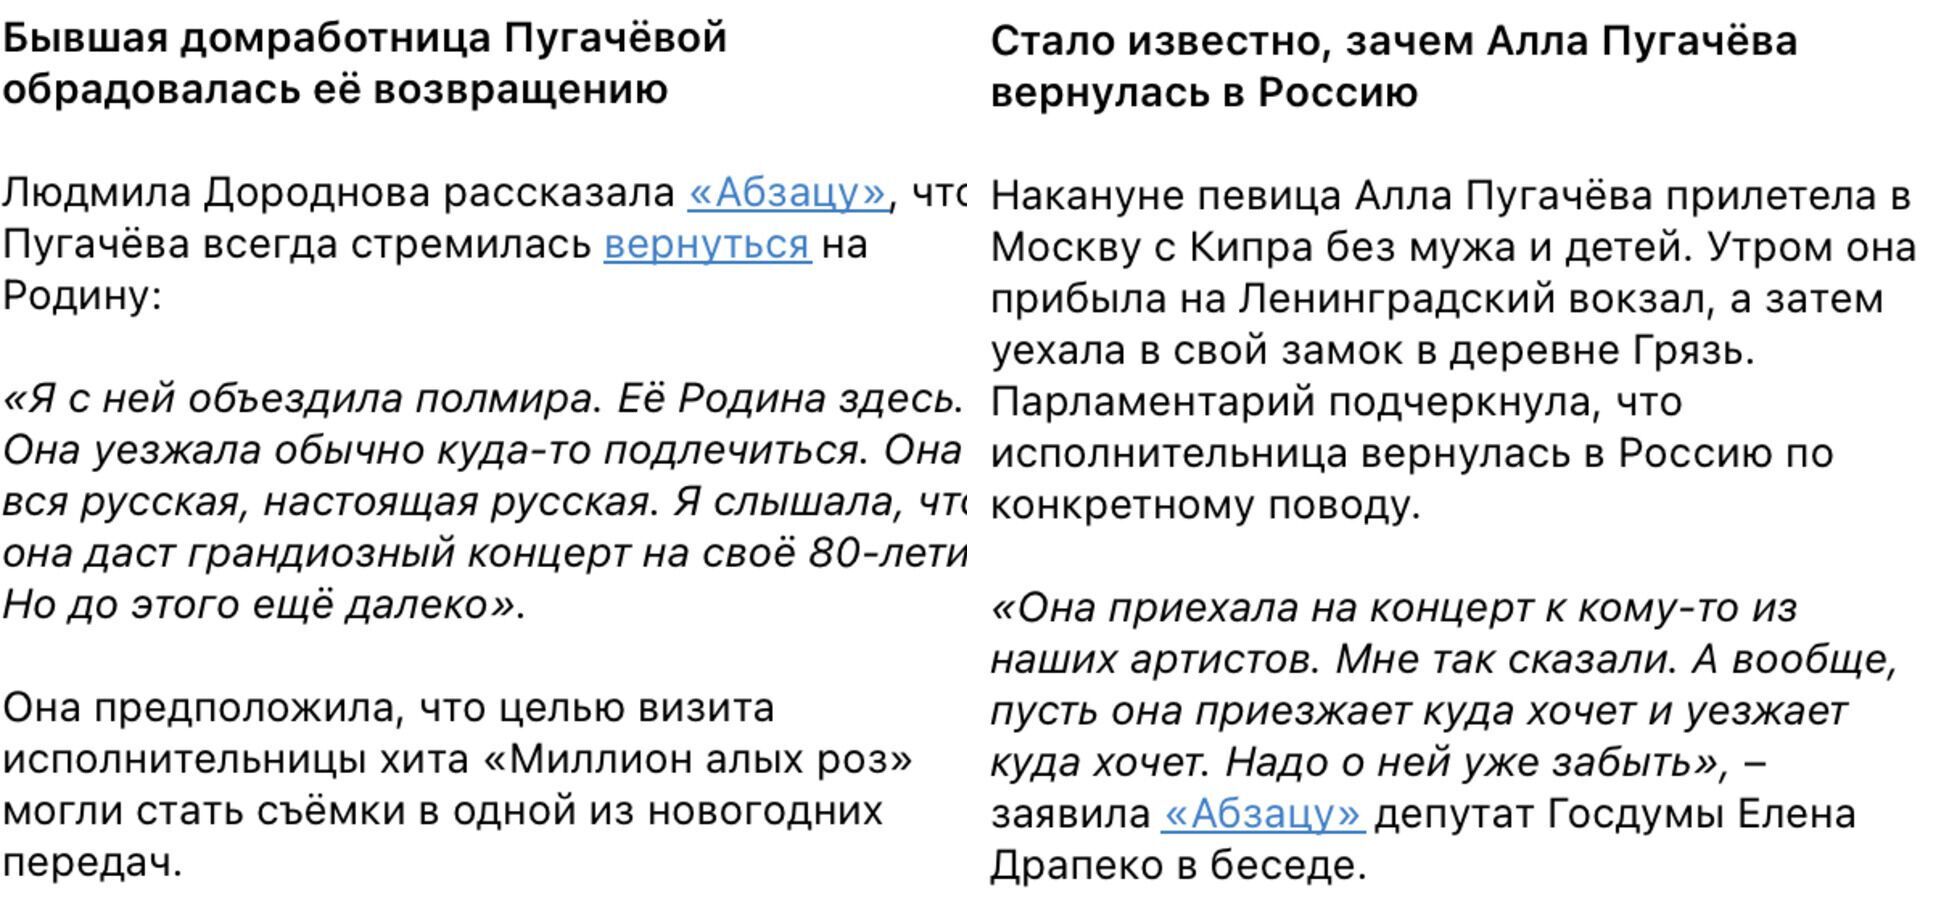 Пугачова покинула Галкіна і готується до концерту в РФ? Російські пропагандисти знову зганьбилися